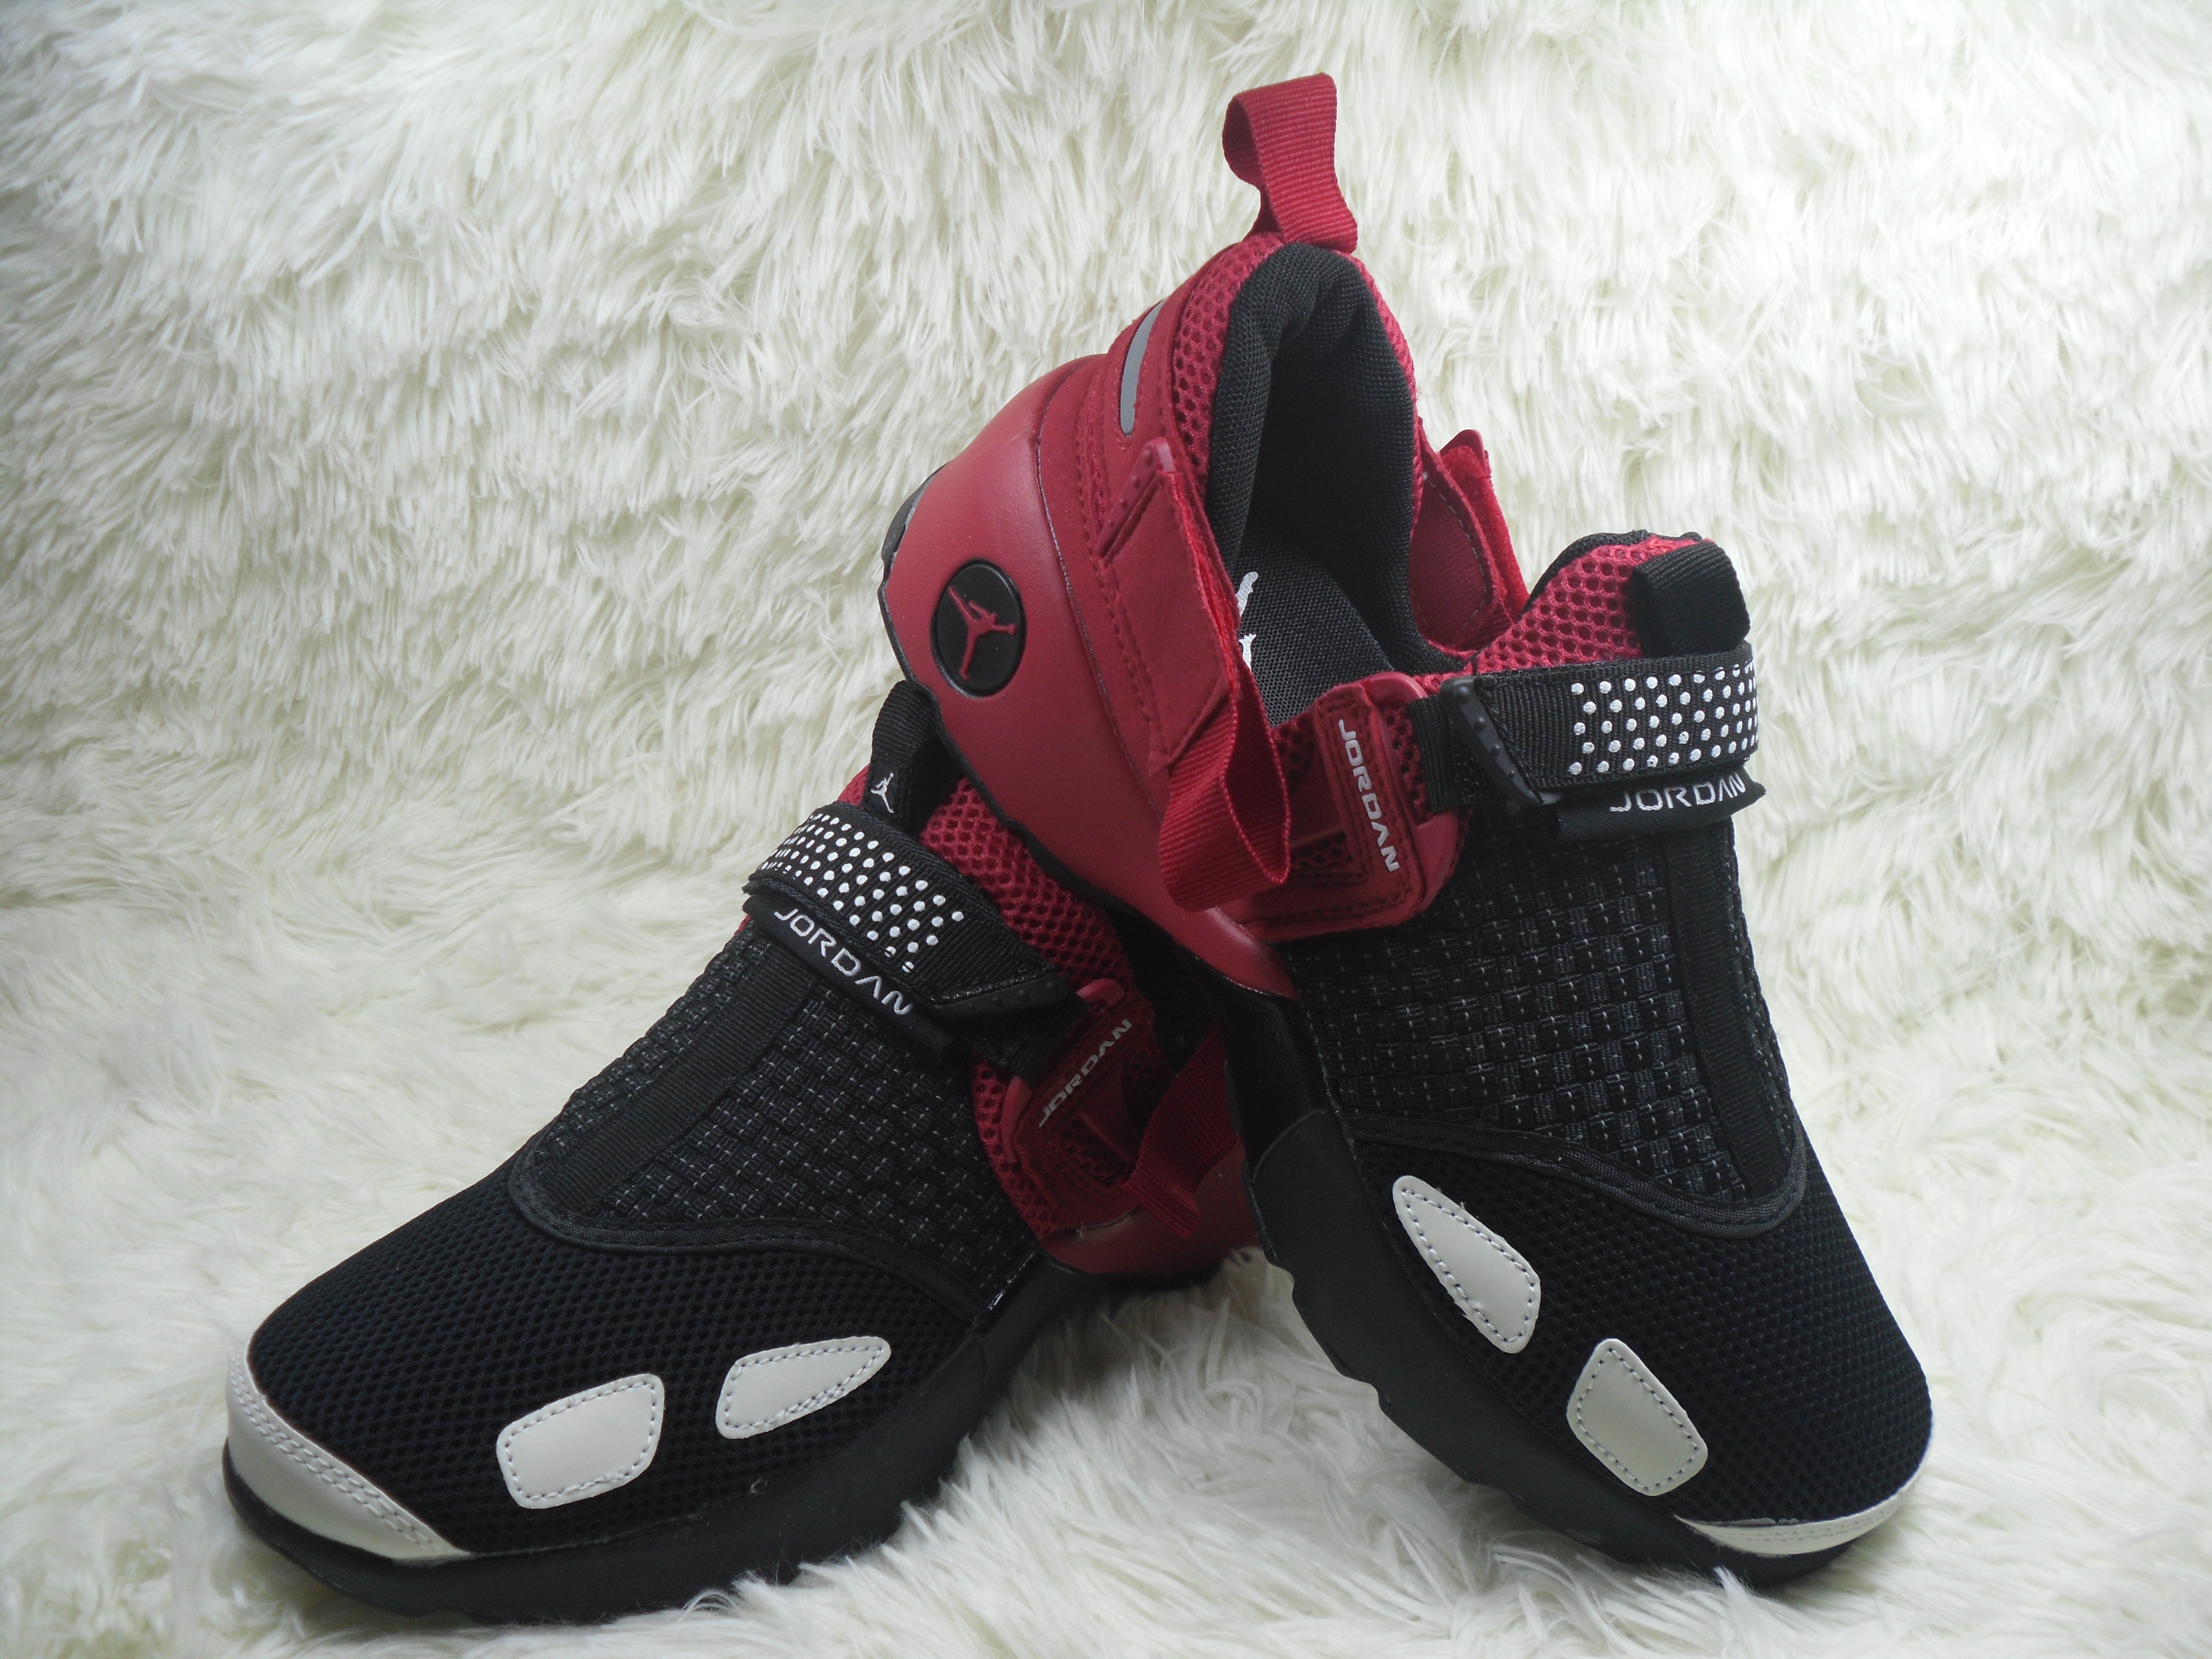 Jordan Trainer 3 Black Red White Running Shoes